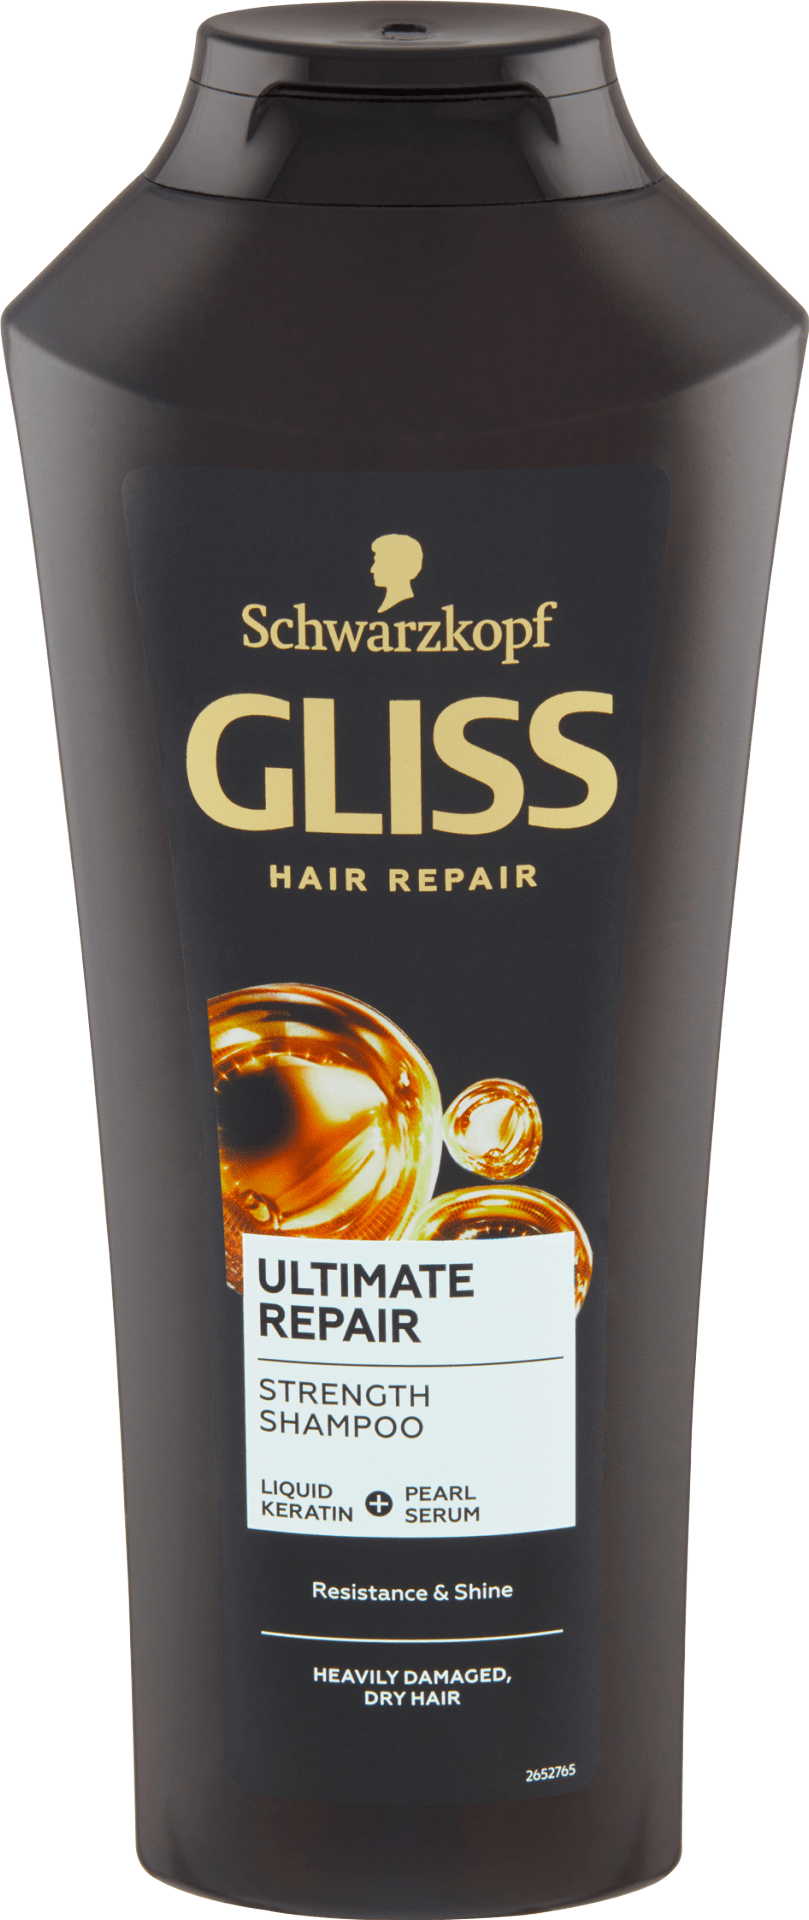 Schwarzkopf Gliss Kur Ultimate Repair